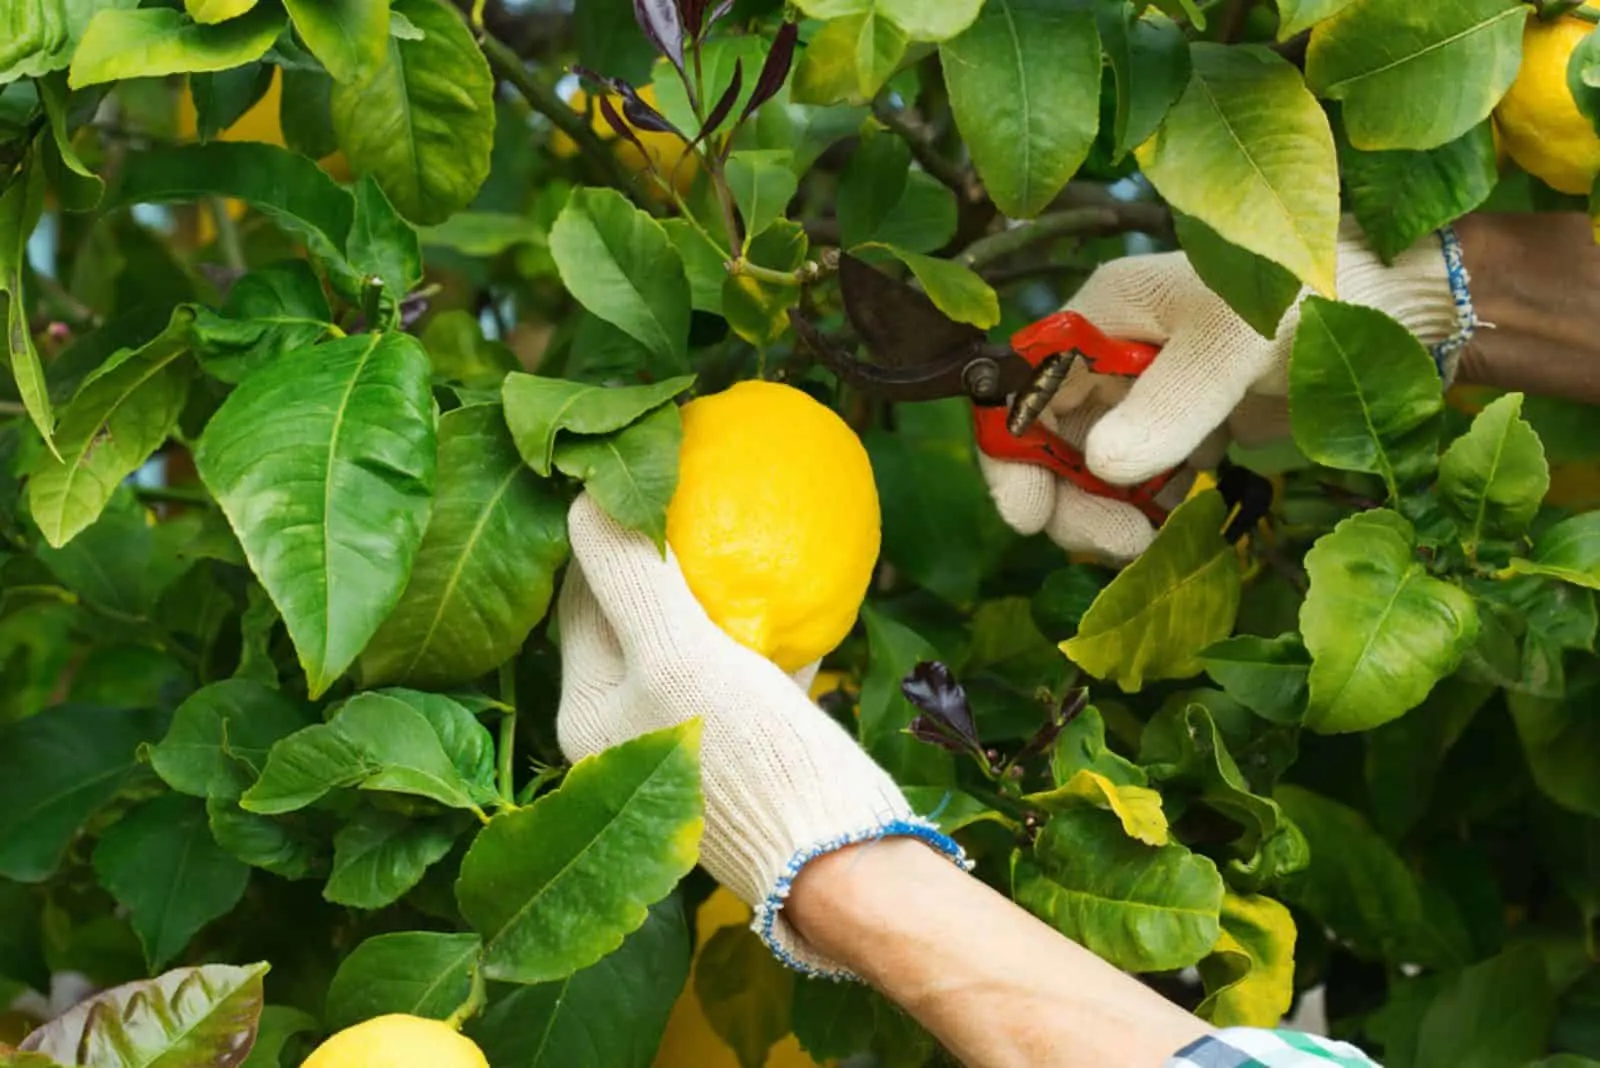 gardener harvesting lemons from tree